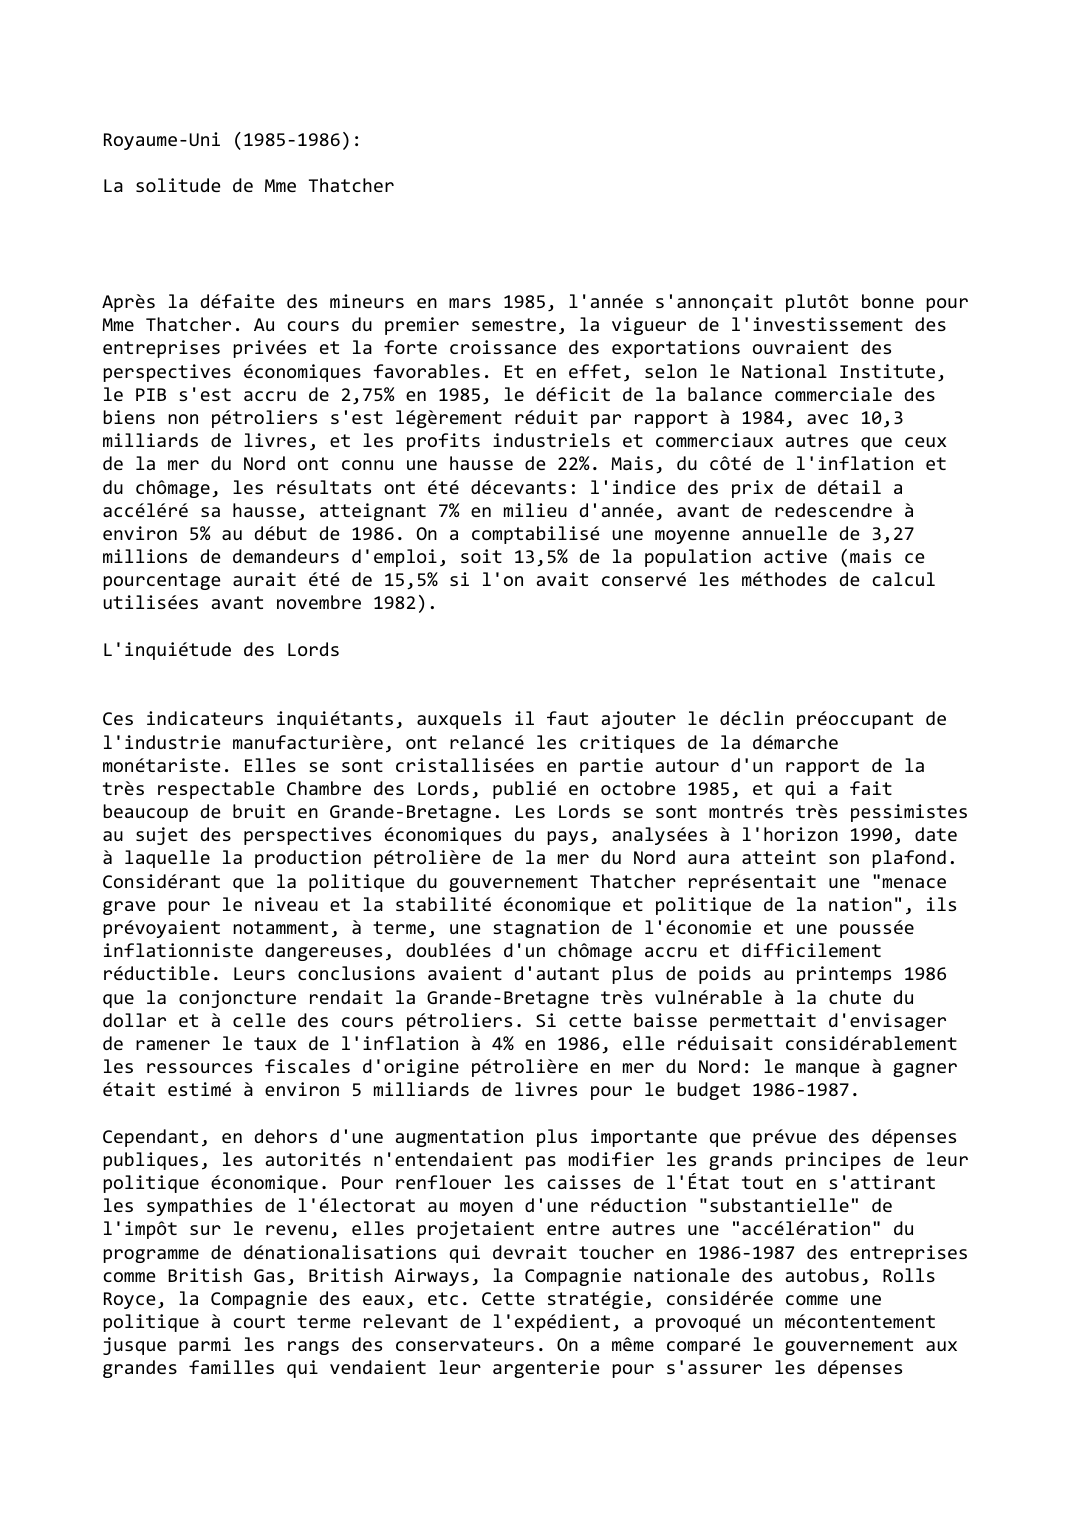 Prévisualisation du document Royaume-Uni (1985-1986):

La solitude de Mme Thatcher